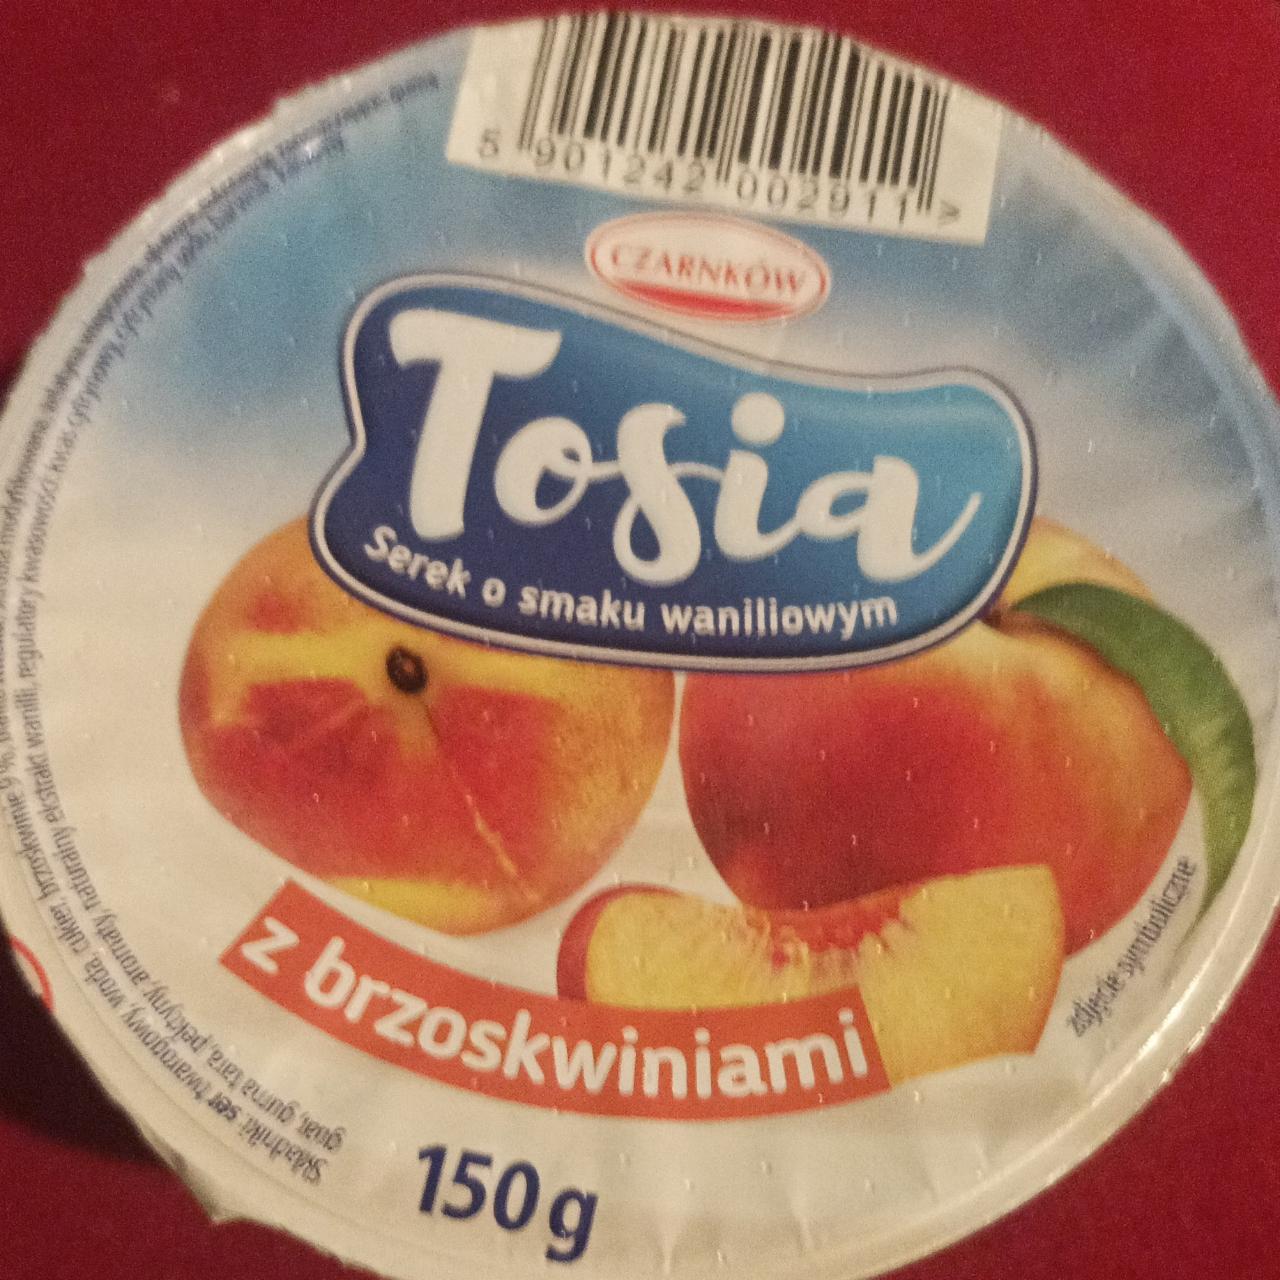 Zdjęcia - Tosia Serek o smaku waniliowym z brzoskwiniami Czarnków